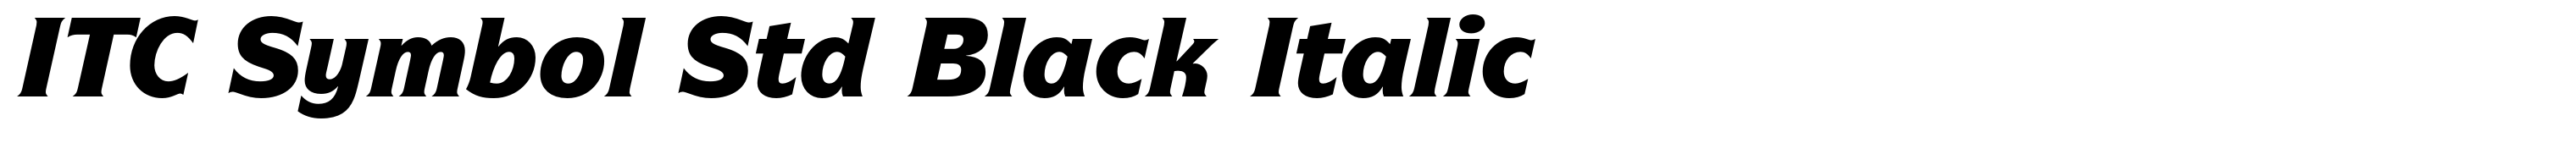 ITC Symbol Std Black Italic